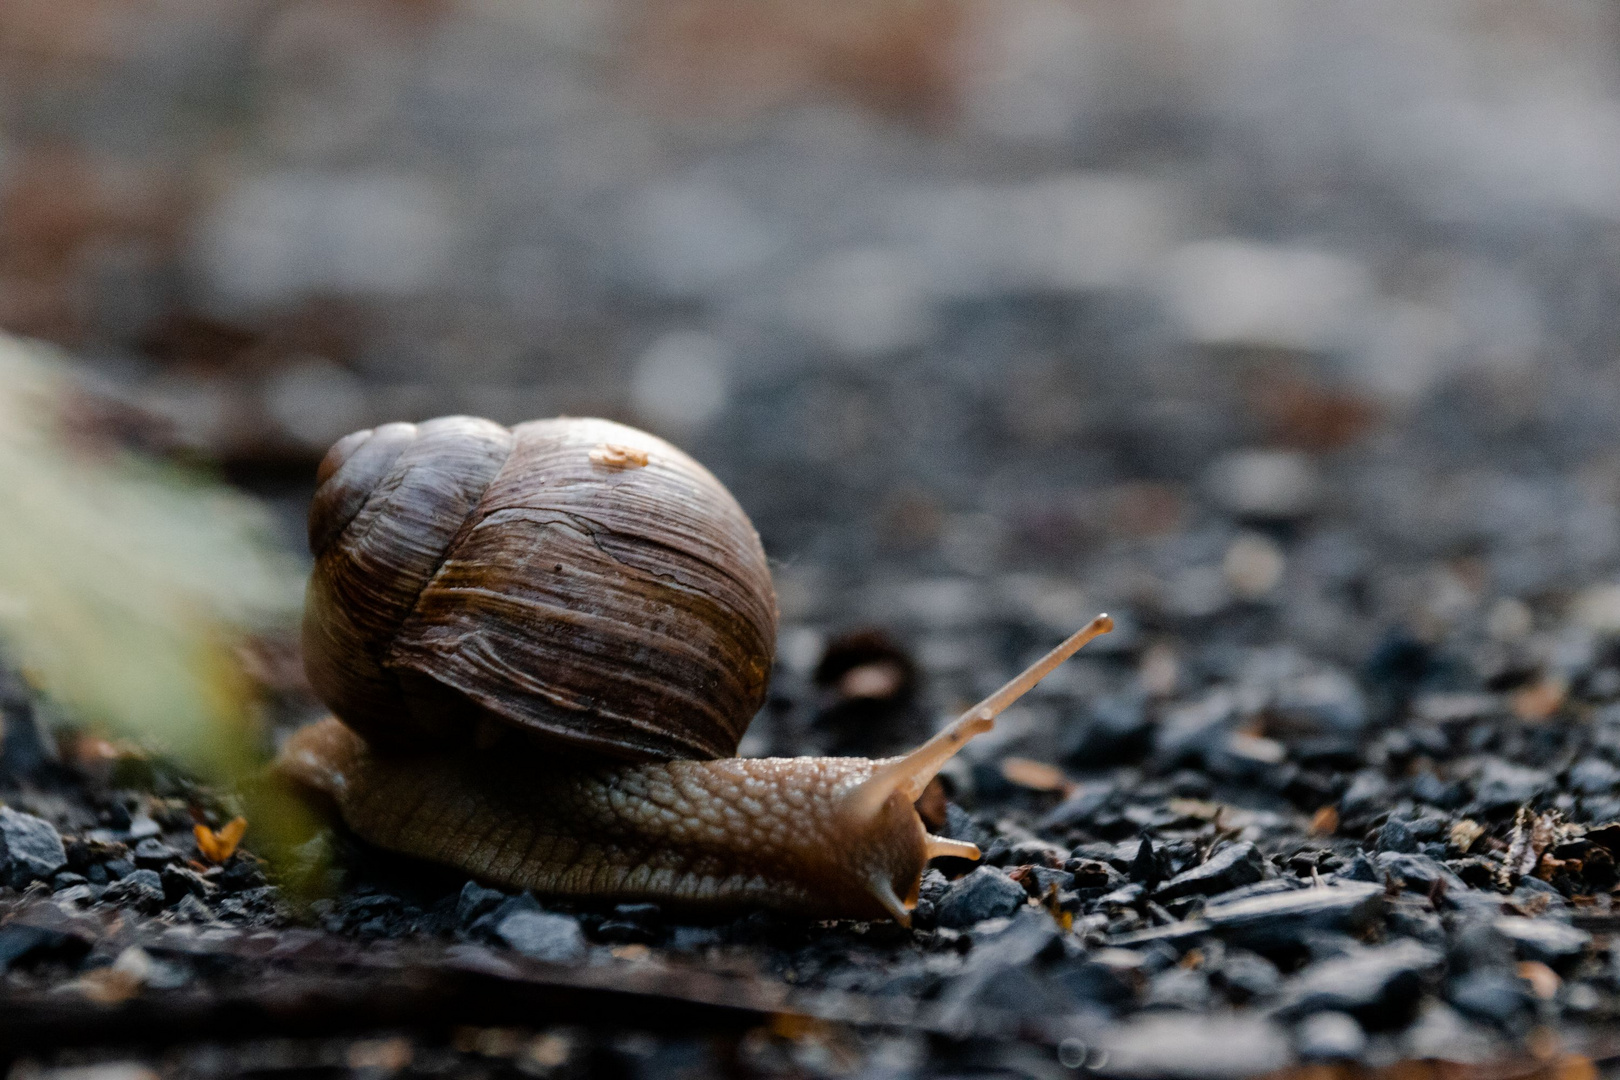 Shelldon the snail